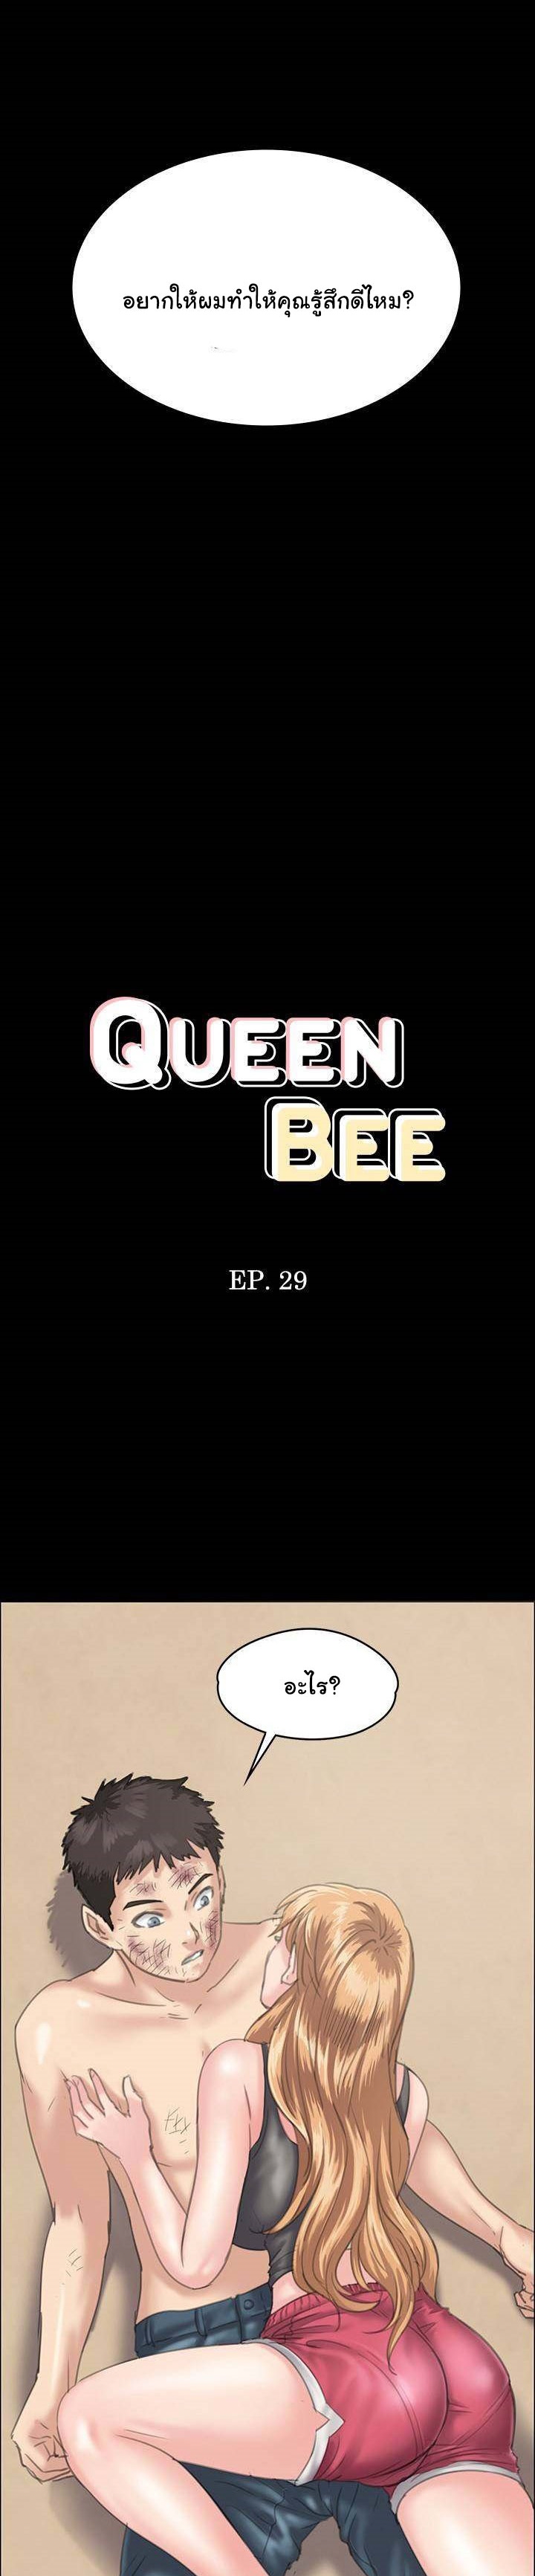 Queen Bee ควีนบี